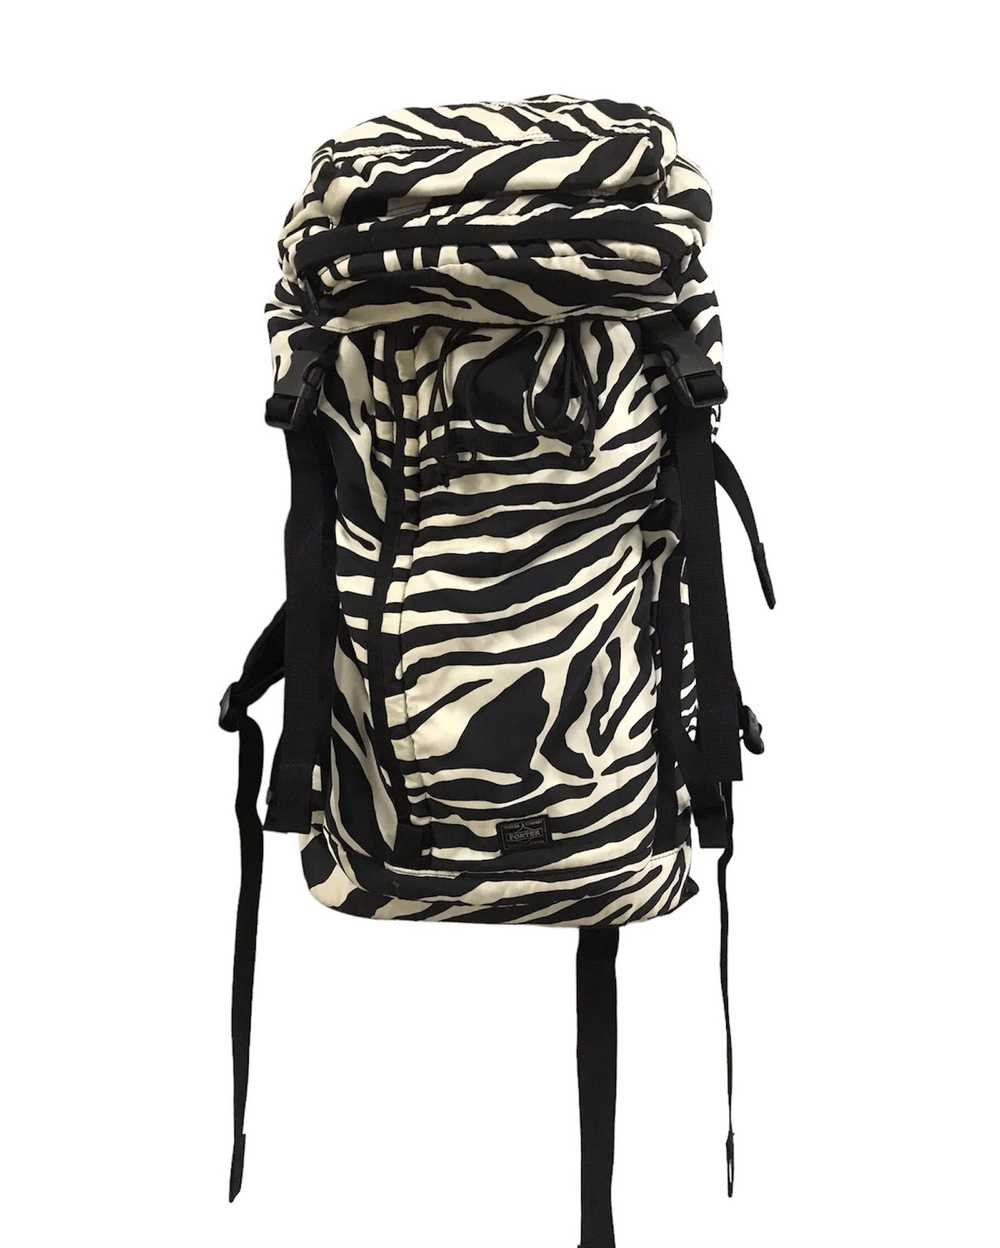 Porter Porter-Zebra Rucksack backpack - image 1